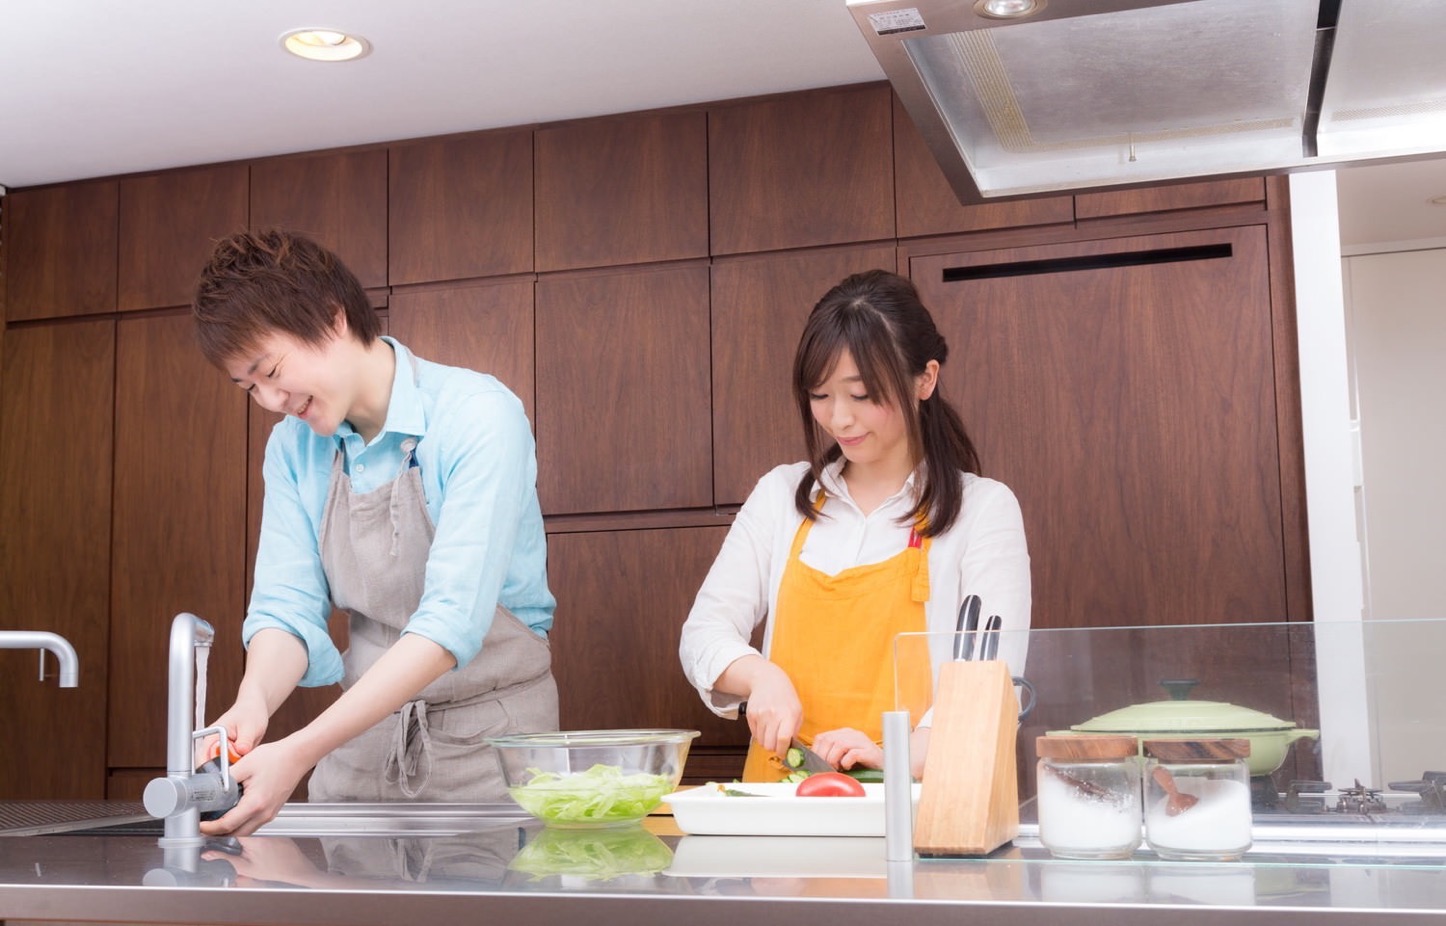 Igarashi-Couple-Cooking-Free-Photos-14.jpg